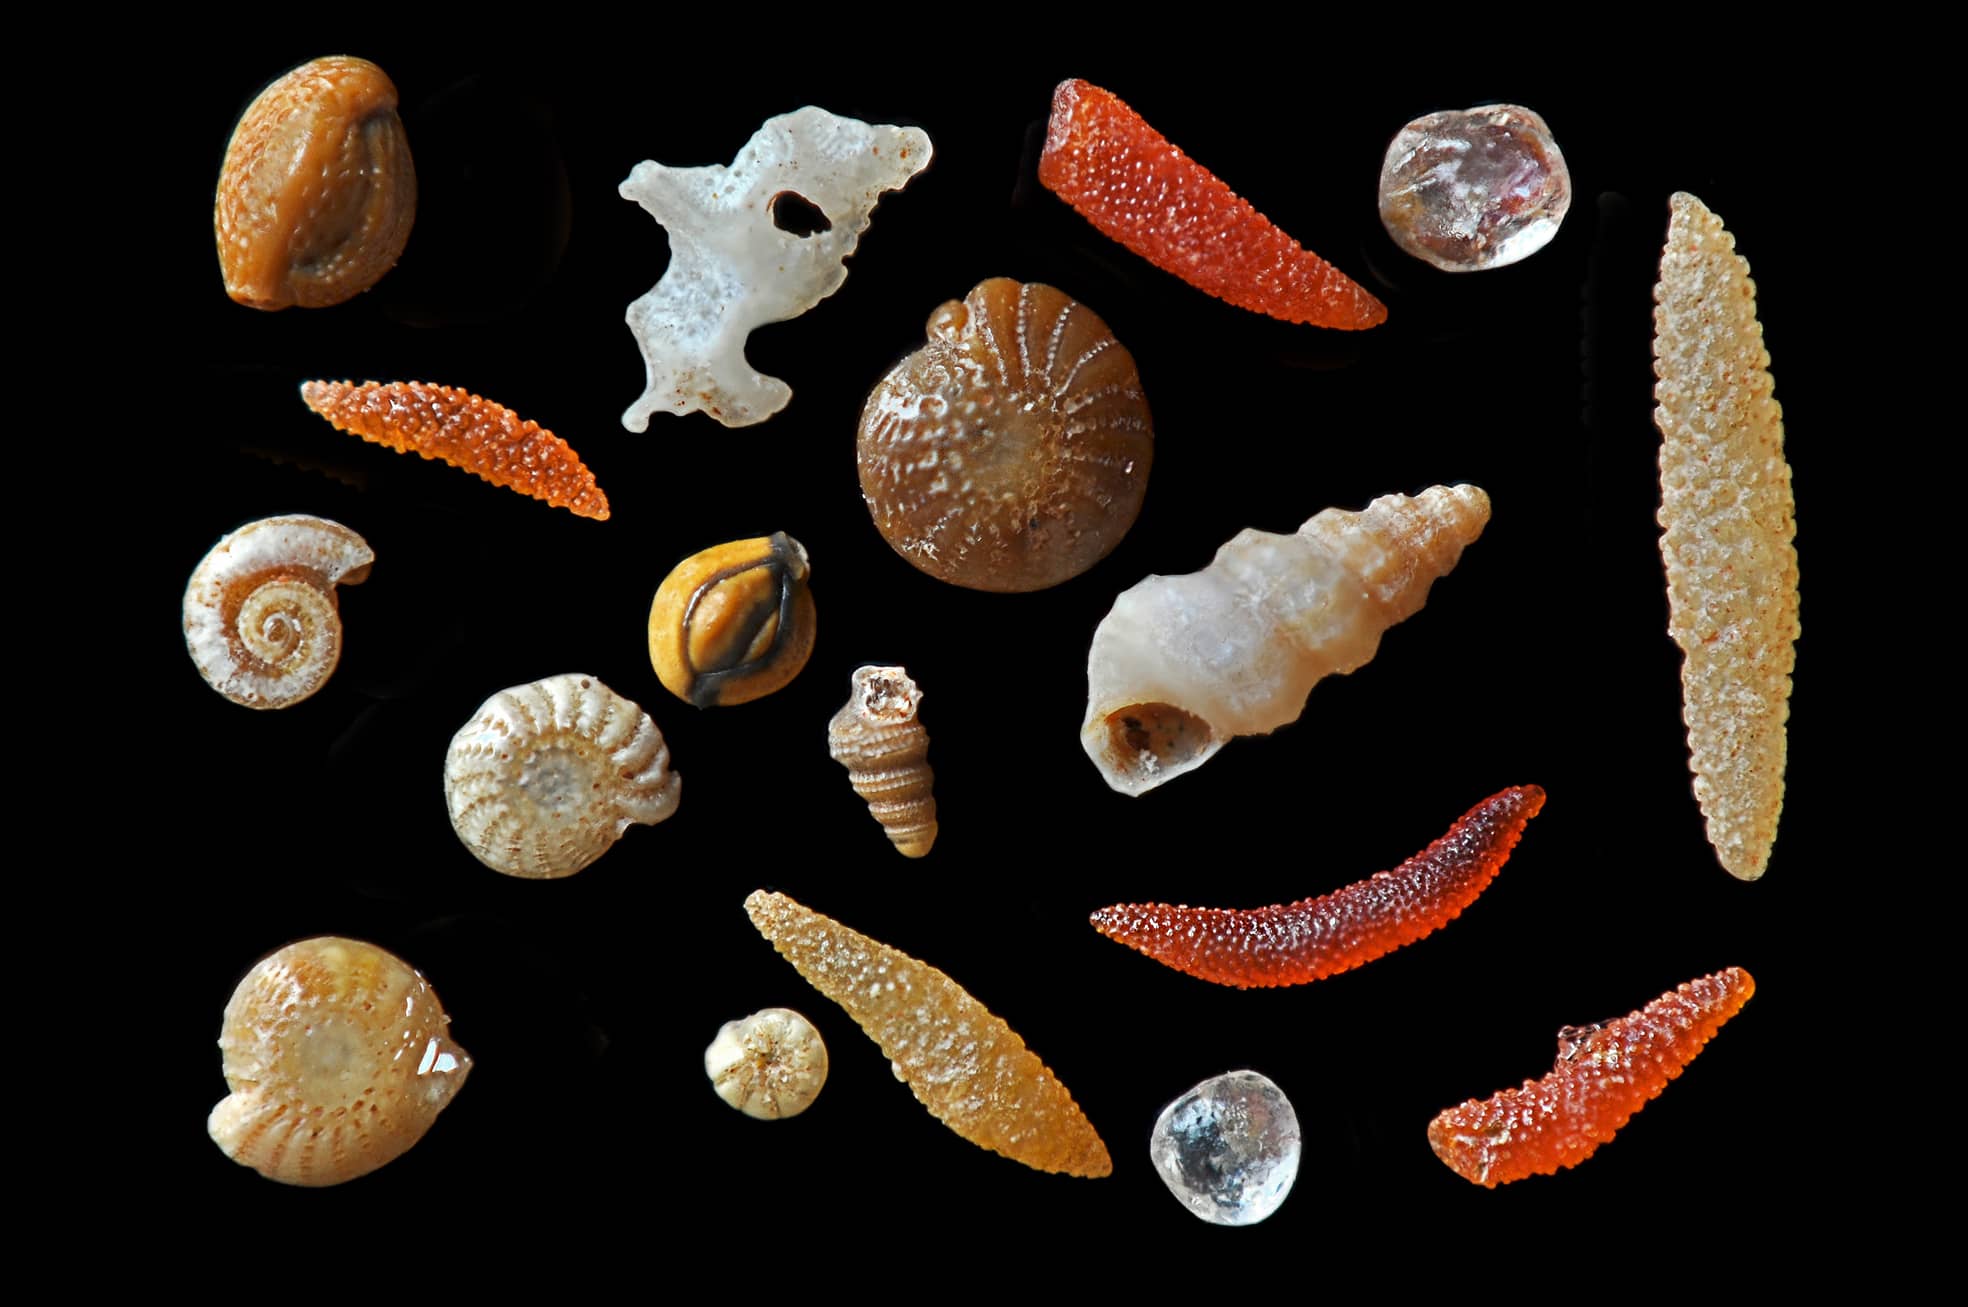 Die mikroskopische Aufnahme von Sandkörnern aus Darwin (Australien) zeigt sechs Außenskelettteile von Gliederfüßern in Rot, Orange und Hellgelb. Ebenfalls von Lebewesen stammen Schneckenhäuser und Hüllen gehäusetragender Einzeller. Die beiden Quarzkörner sind rundgeschliffen.